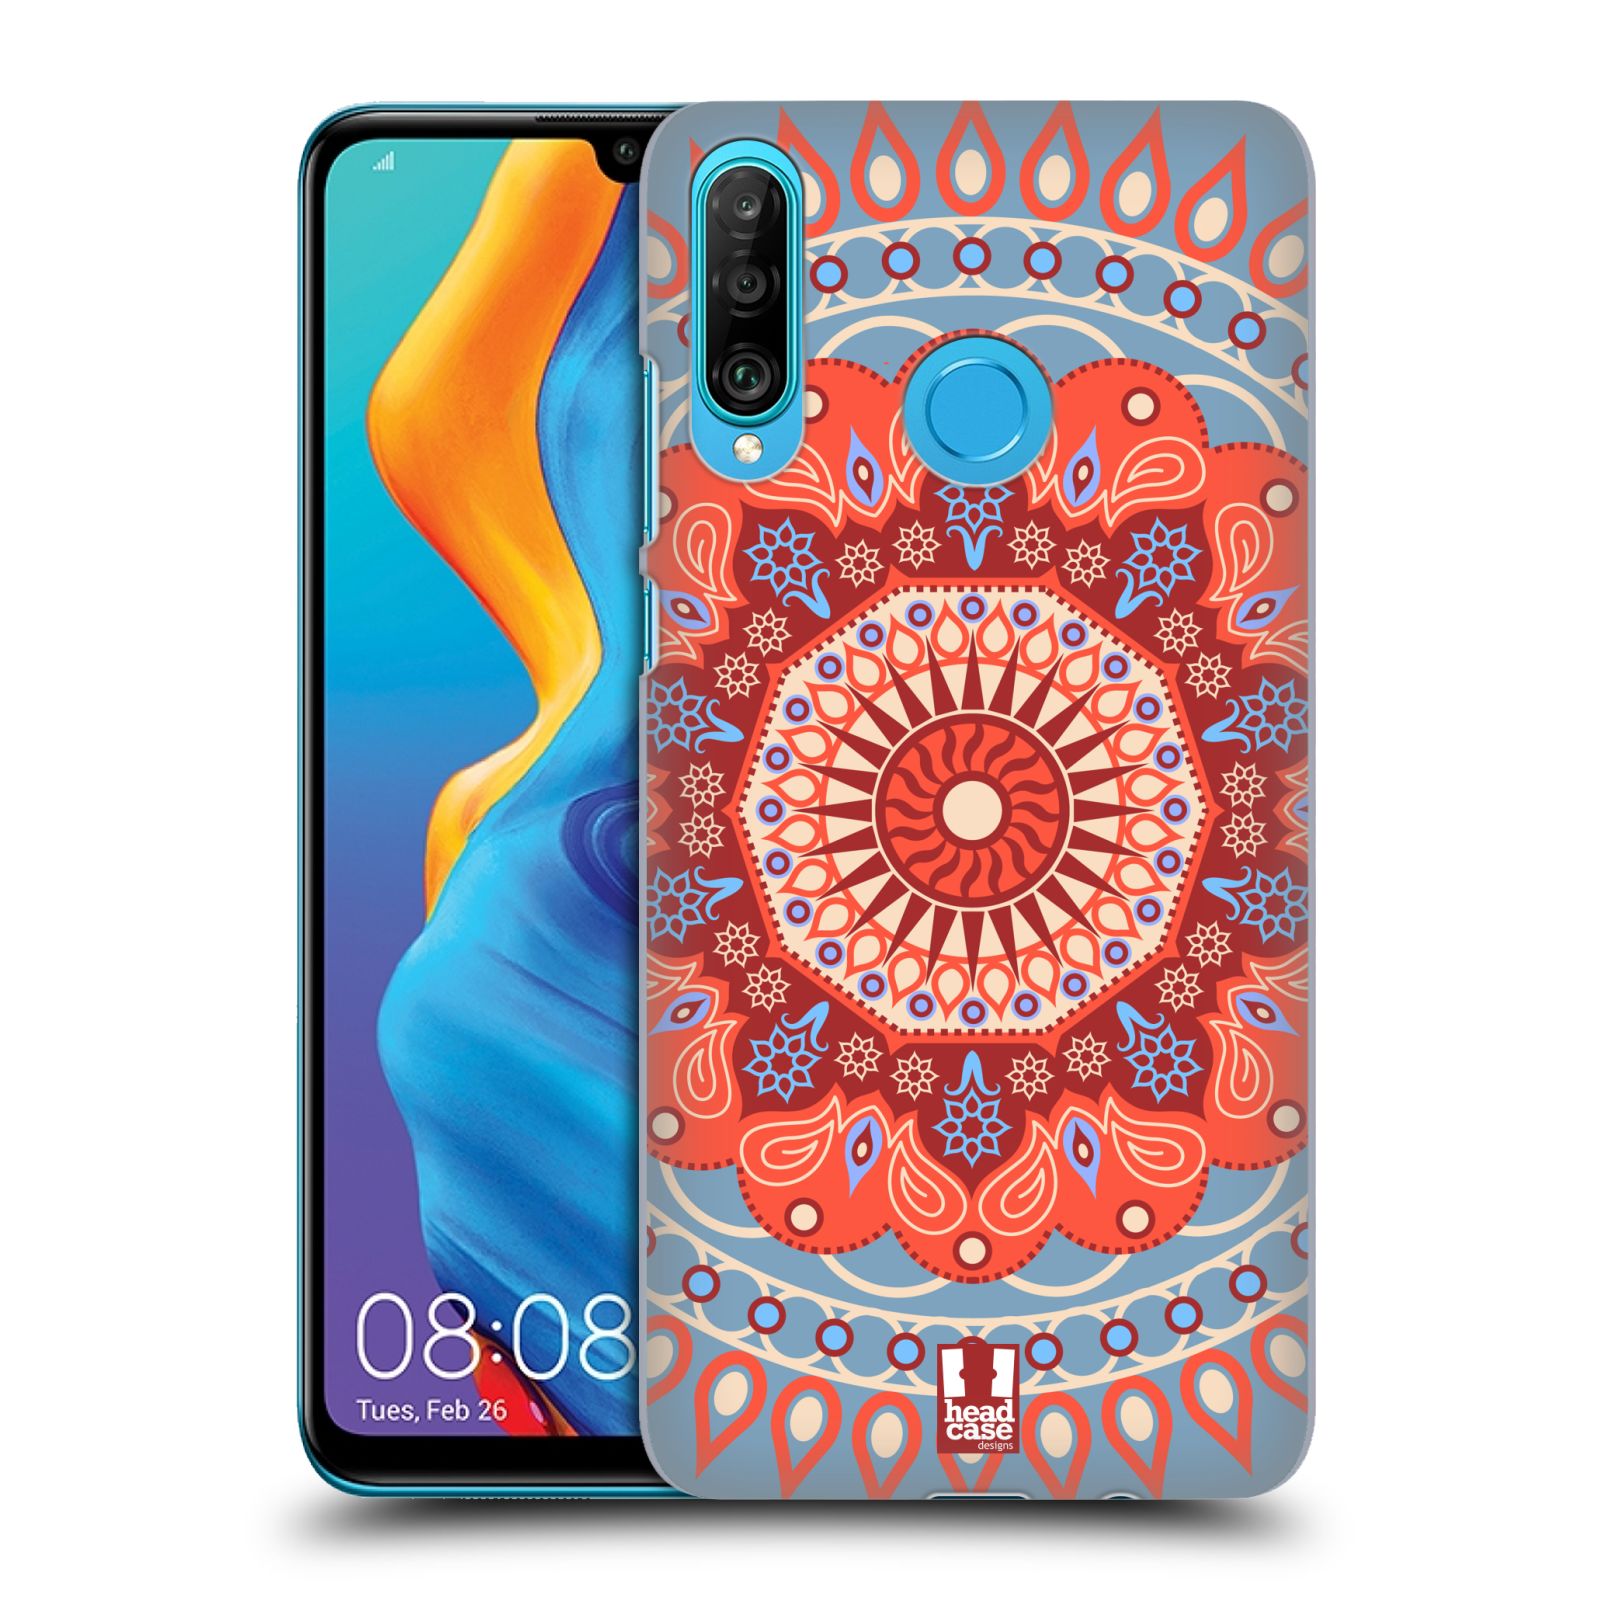 Pouzdro na mobil Huawei P30 LITE - HEAD CASE - vzor Indie Mandala slunce barevný motiv ČERVENÁ A MODRÁ